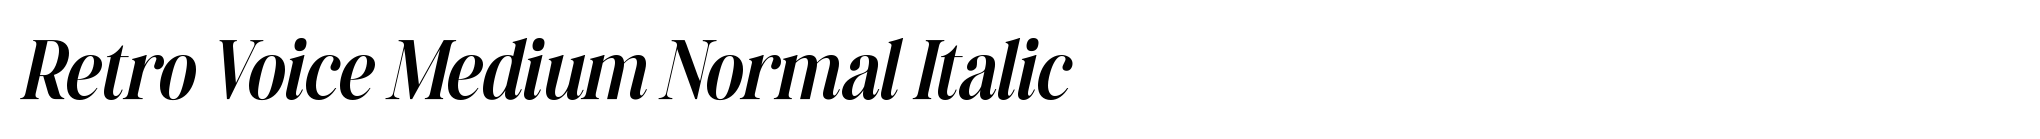 Retro Voice Medium Normal Italic image